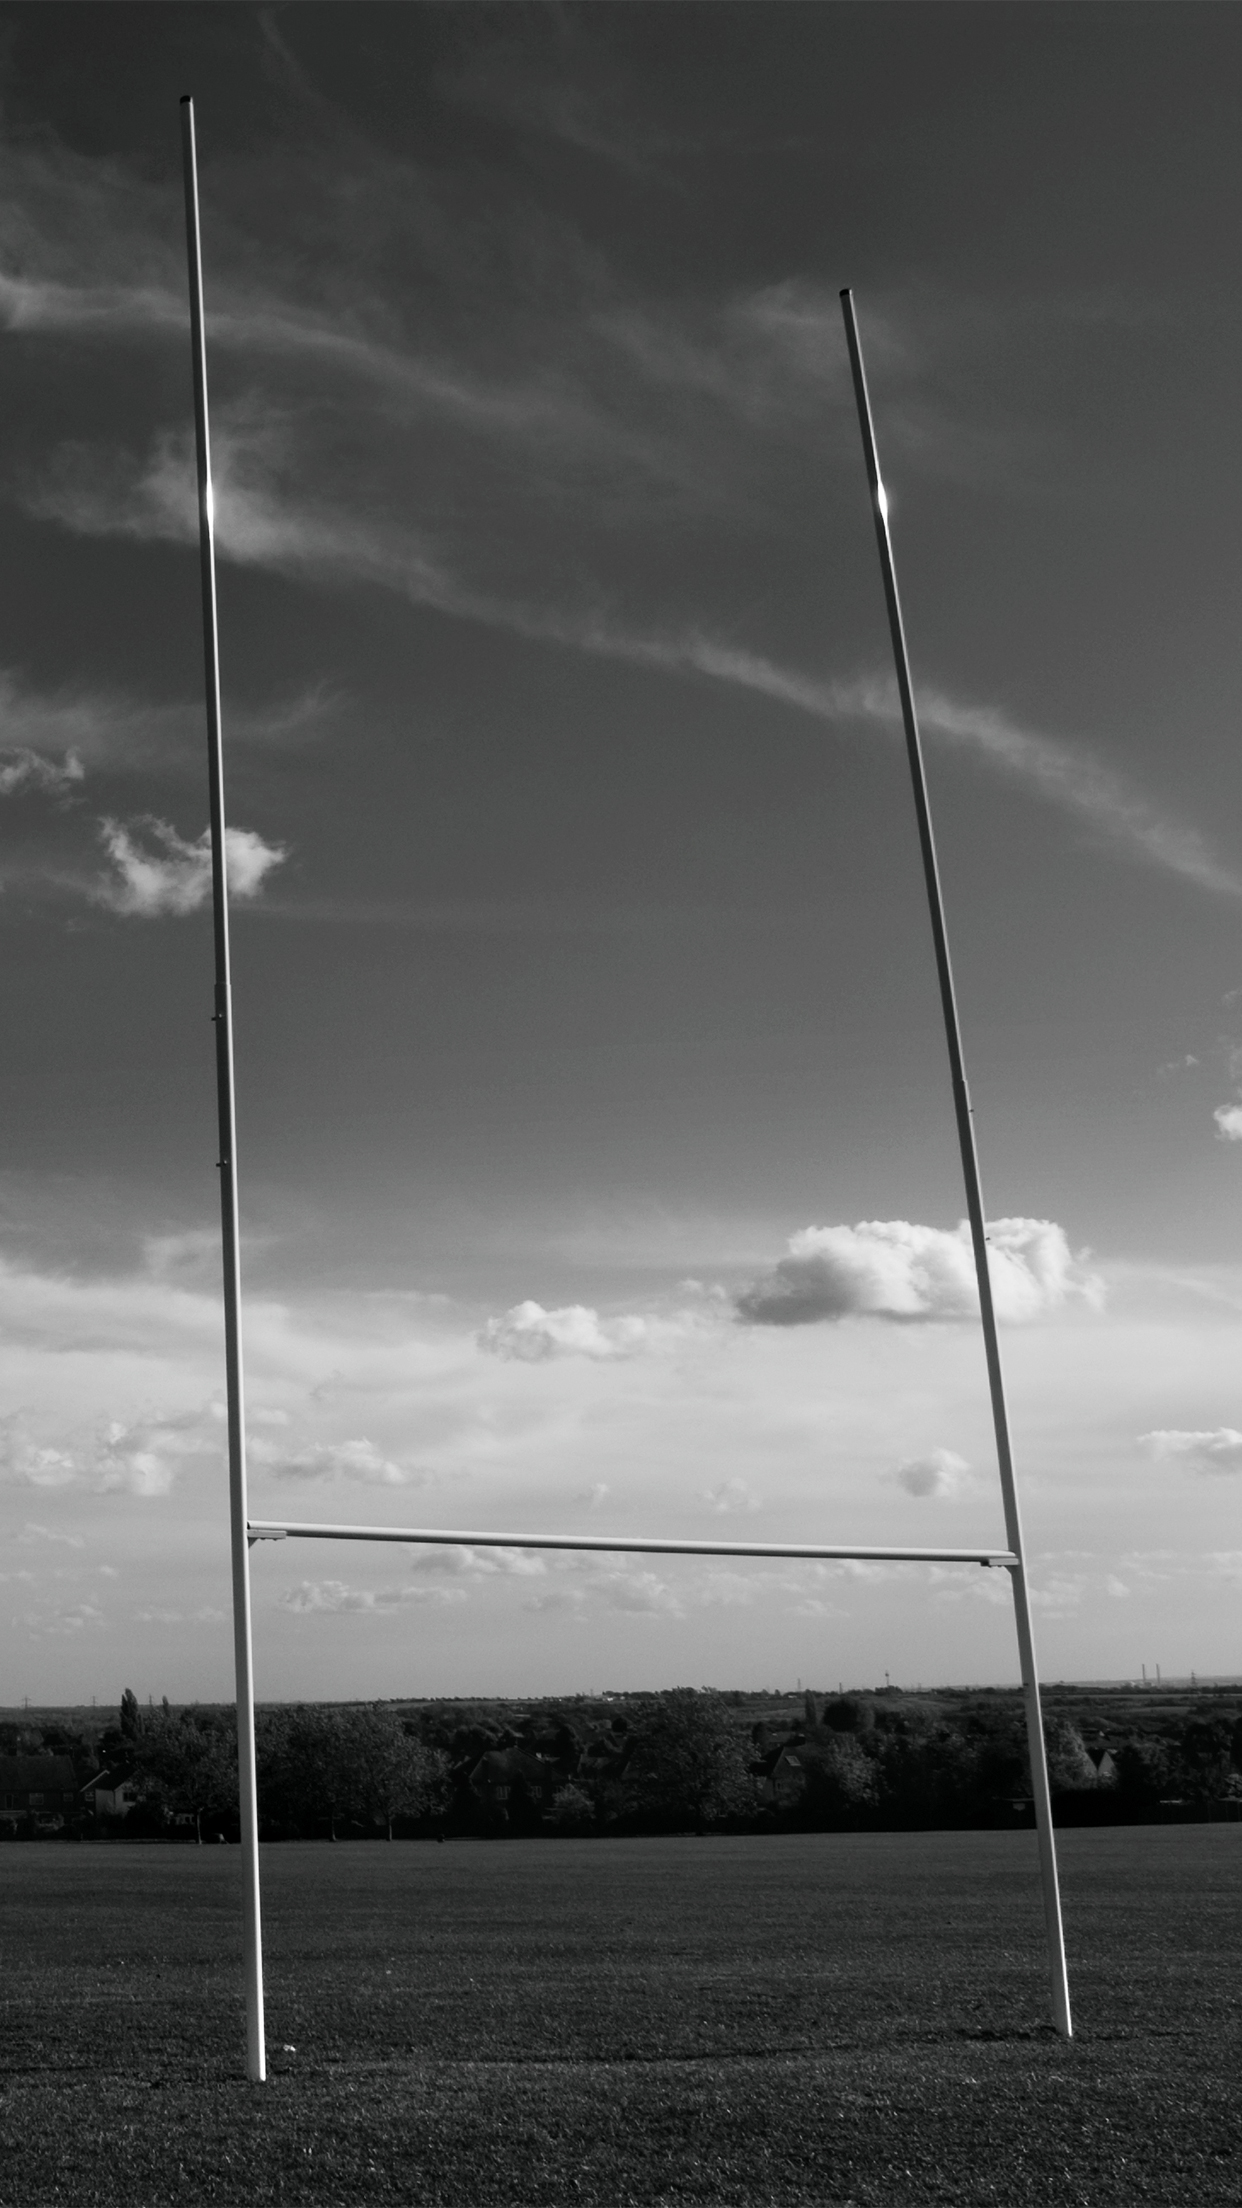 sfondi per il rugby iphone,cielo,nero,fotografia in bianco e nero,bianco e nero,nube